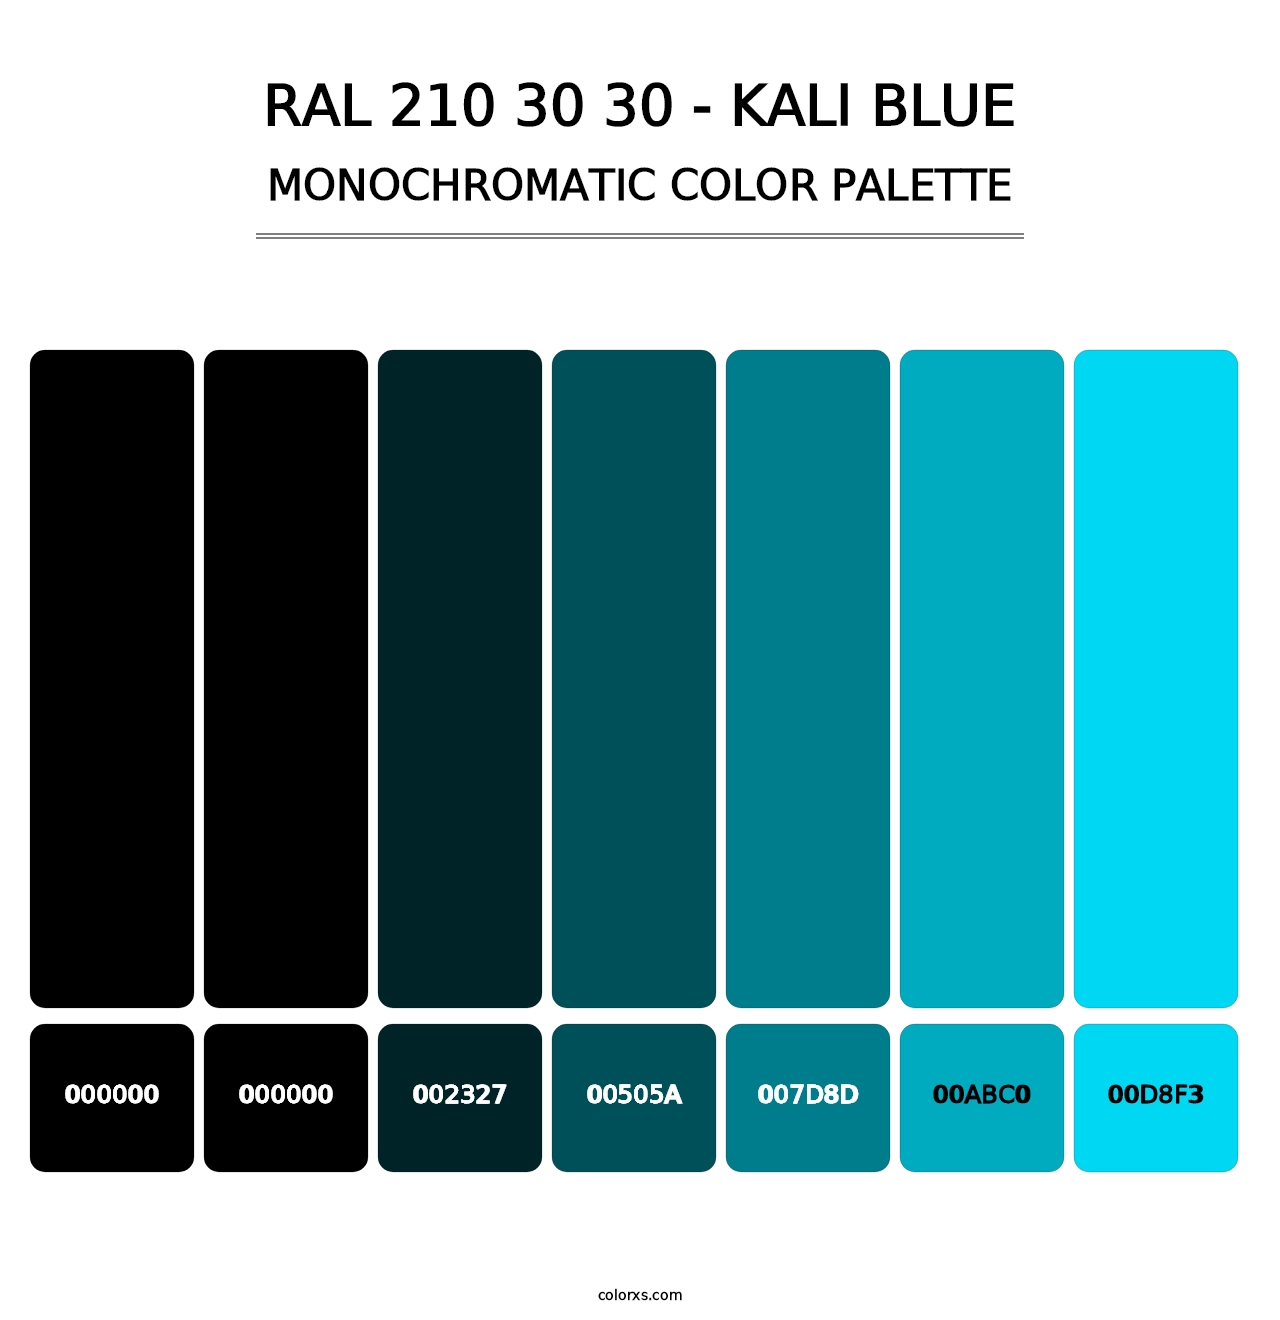 RAL 210 30 30 - Kali Blue - Monochromatic Color Palette